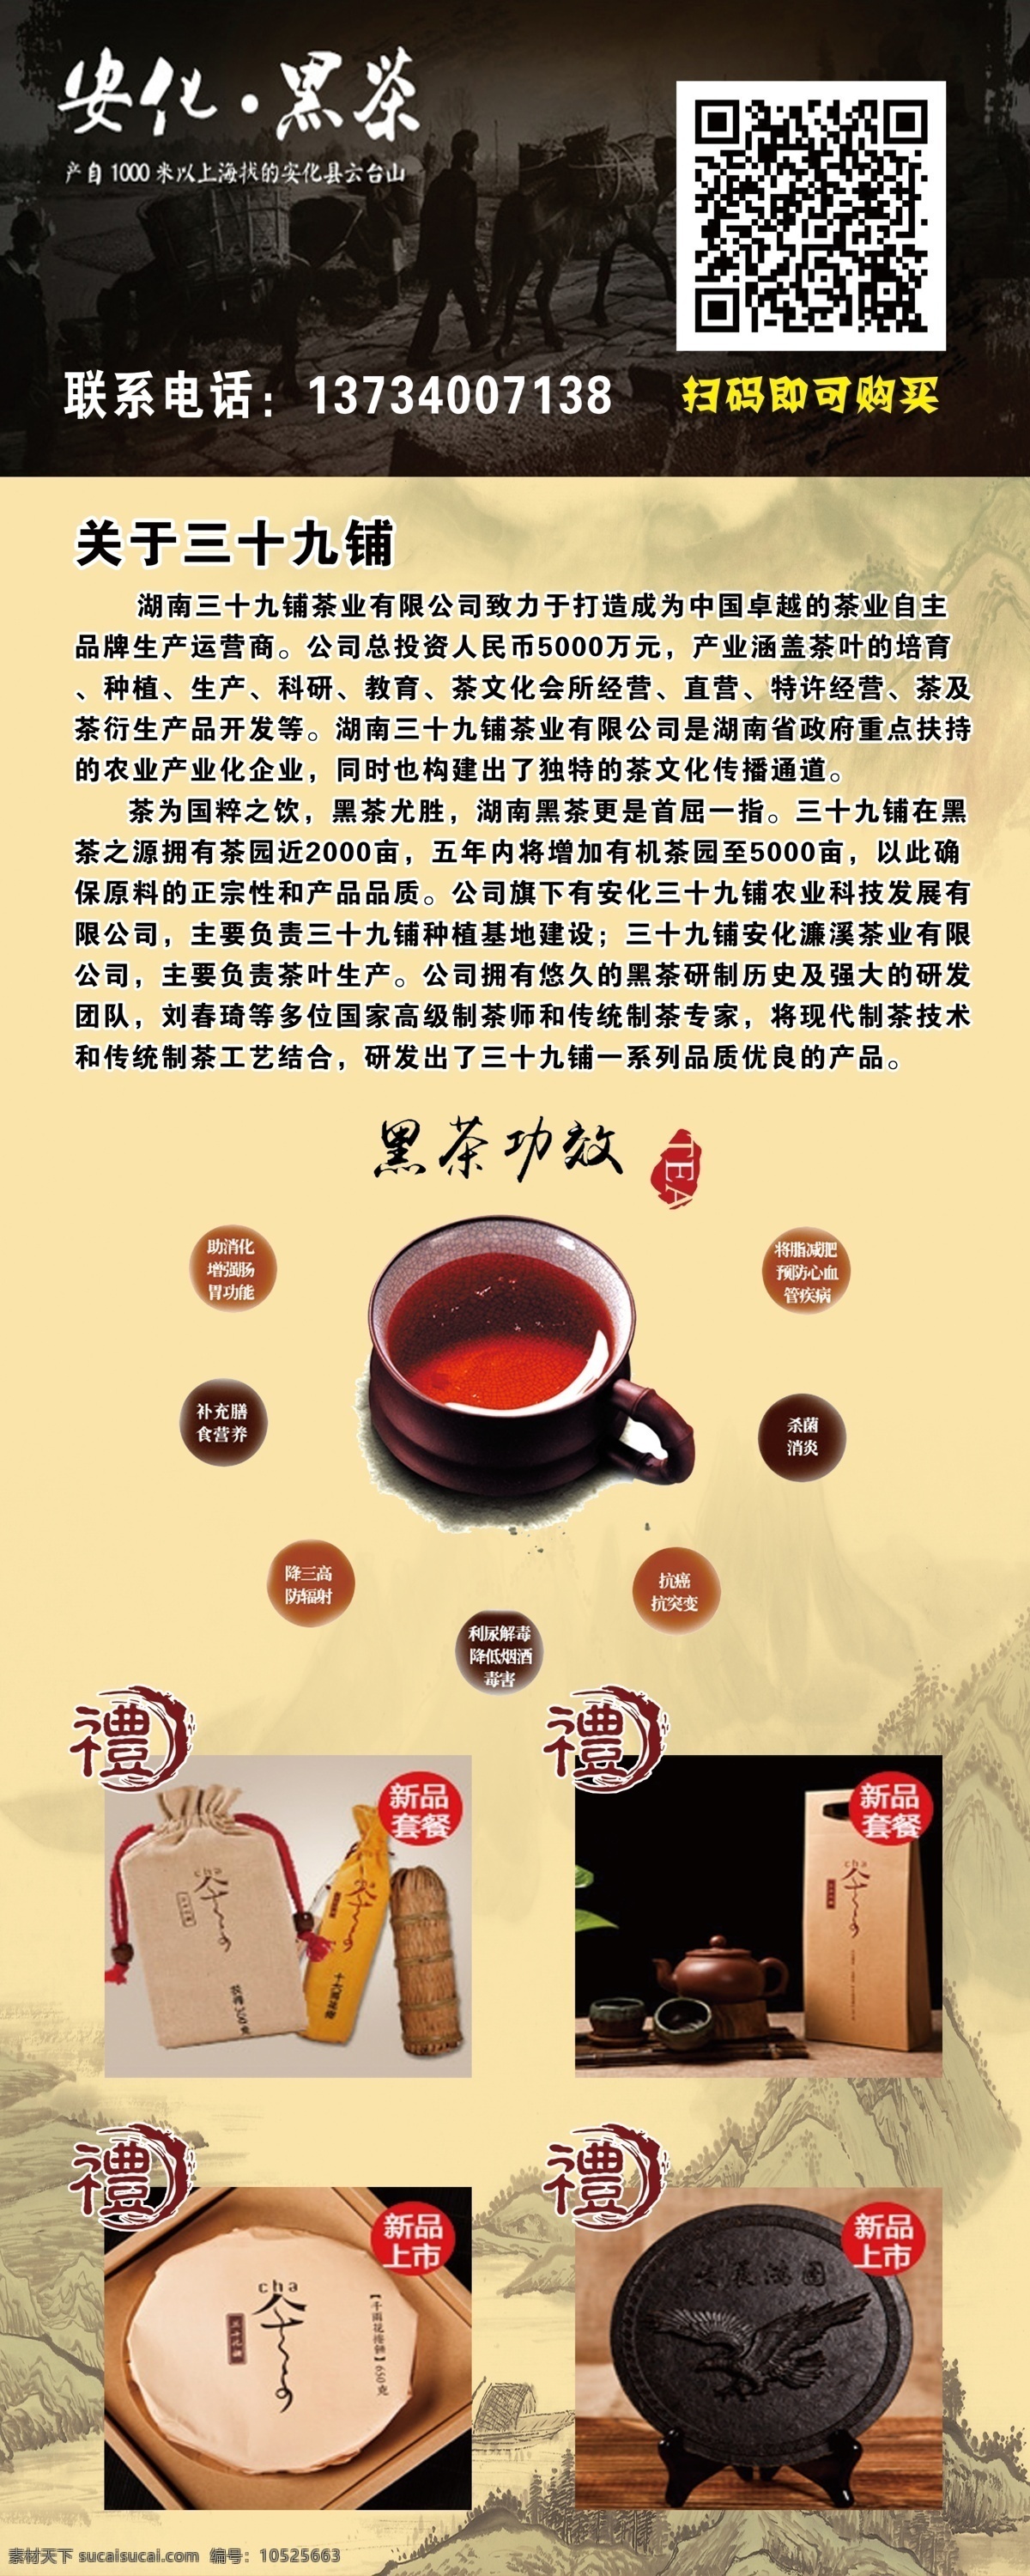 茶文化 传奇 黑茶 茶 保健茶 养生茶 晋杰阿杜 黄色